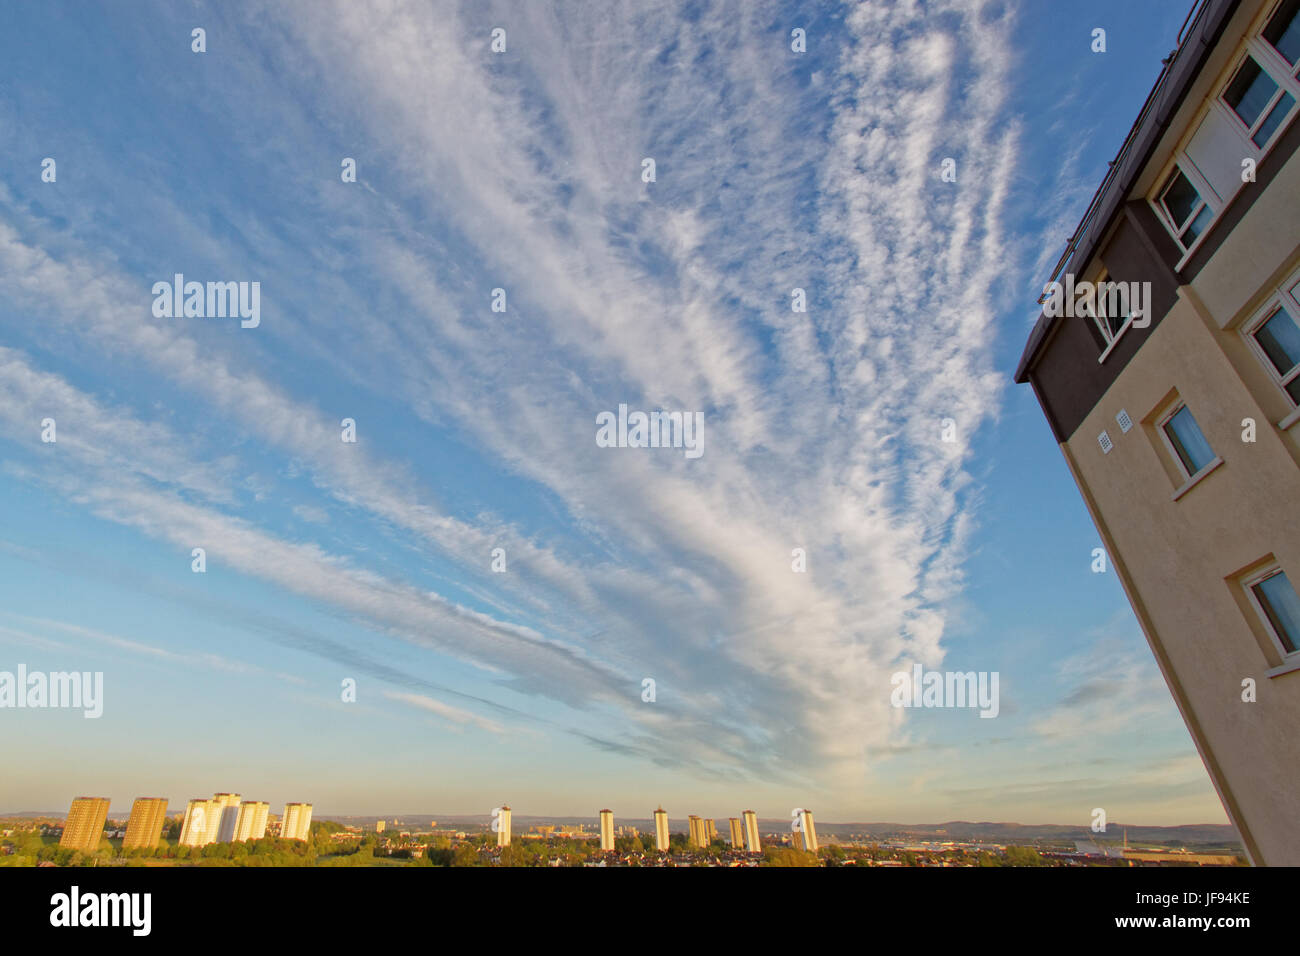 Vue panoramique de Glasgow high rise conseil appartements avec télévision et l'indicateur de premier plan ciel dramatique de souligner quelques problèmes avec ce type de logement Banque D'Images